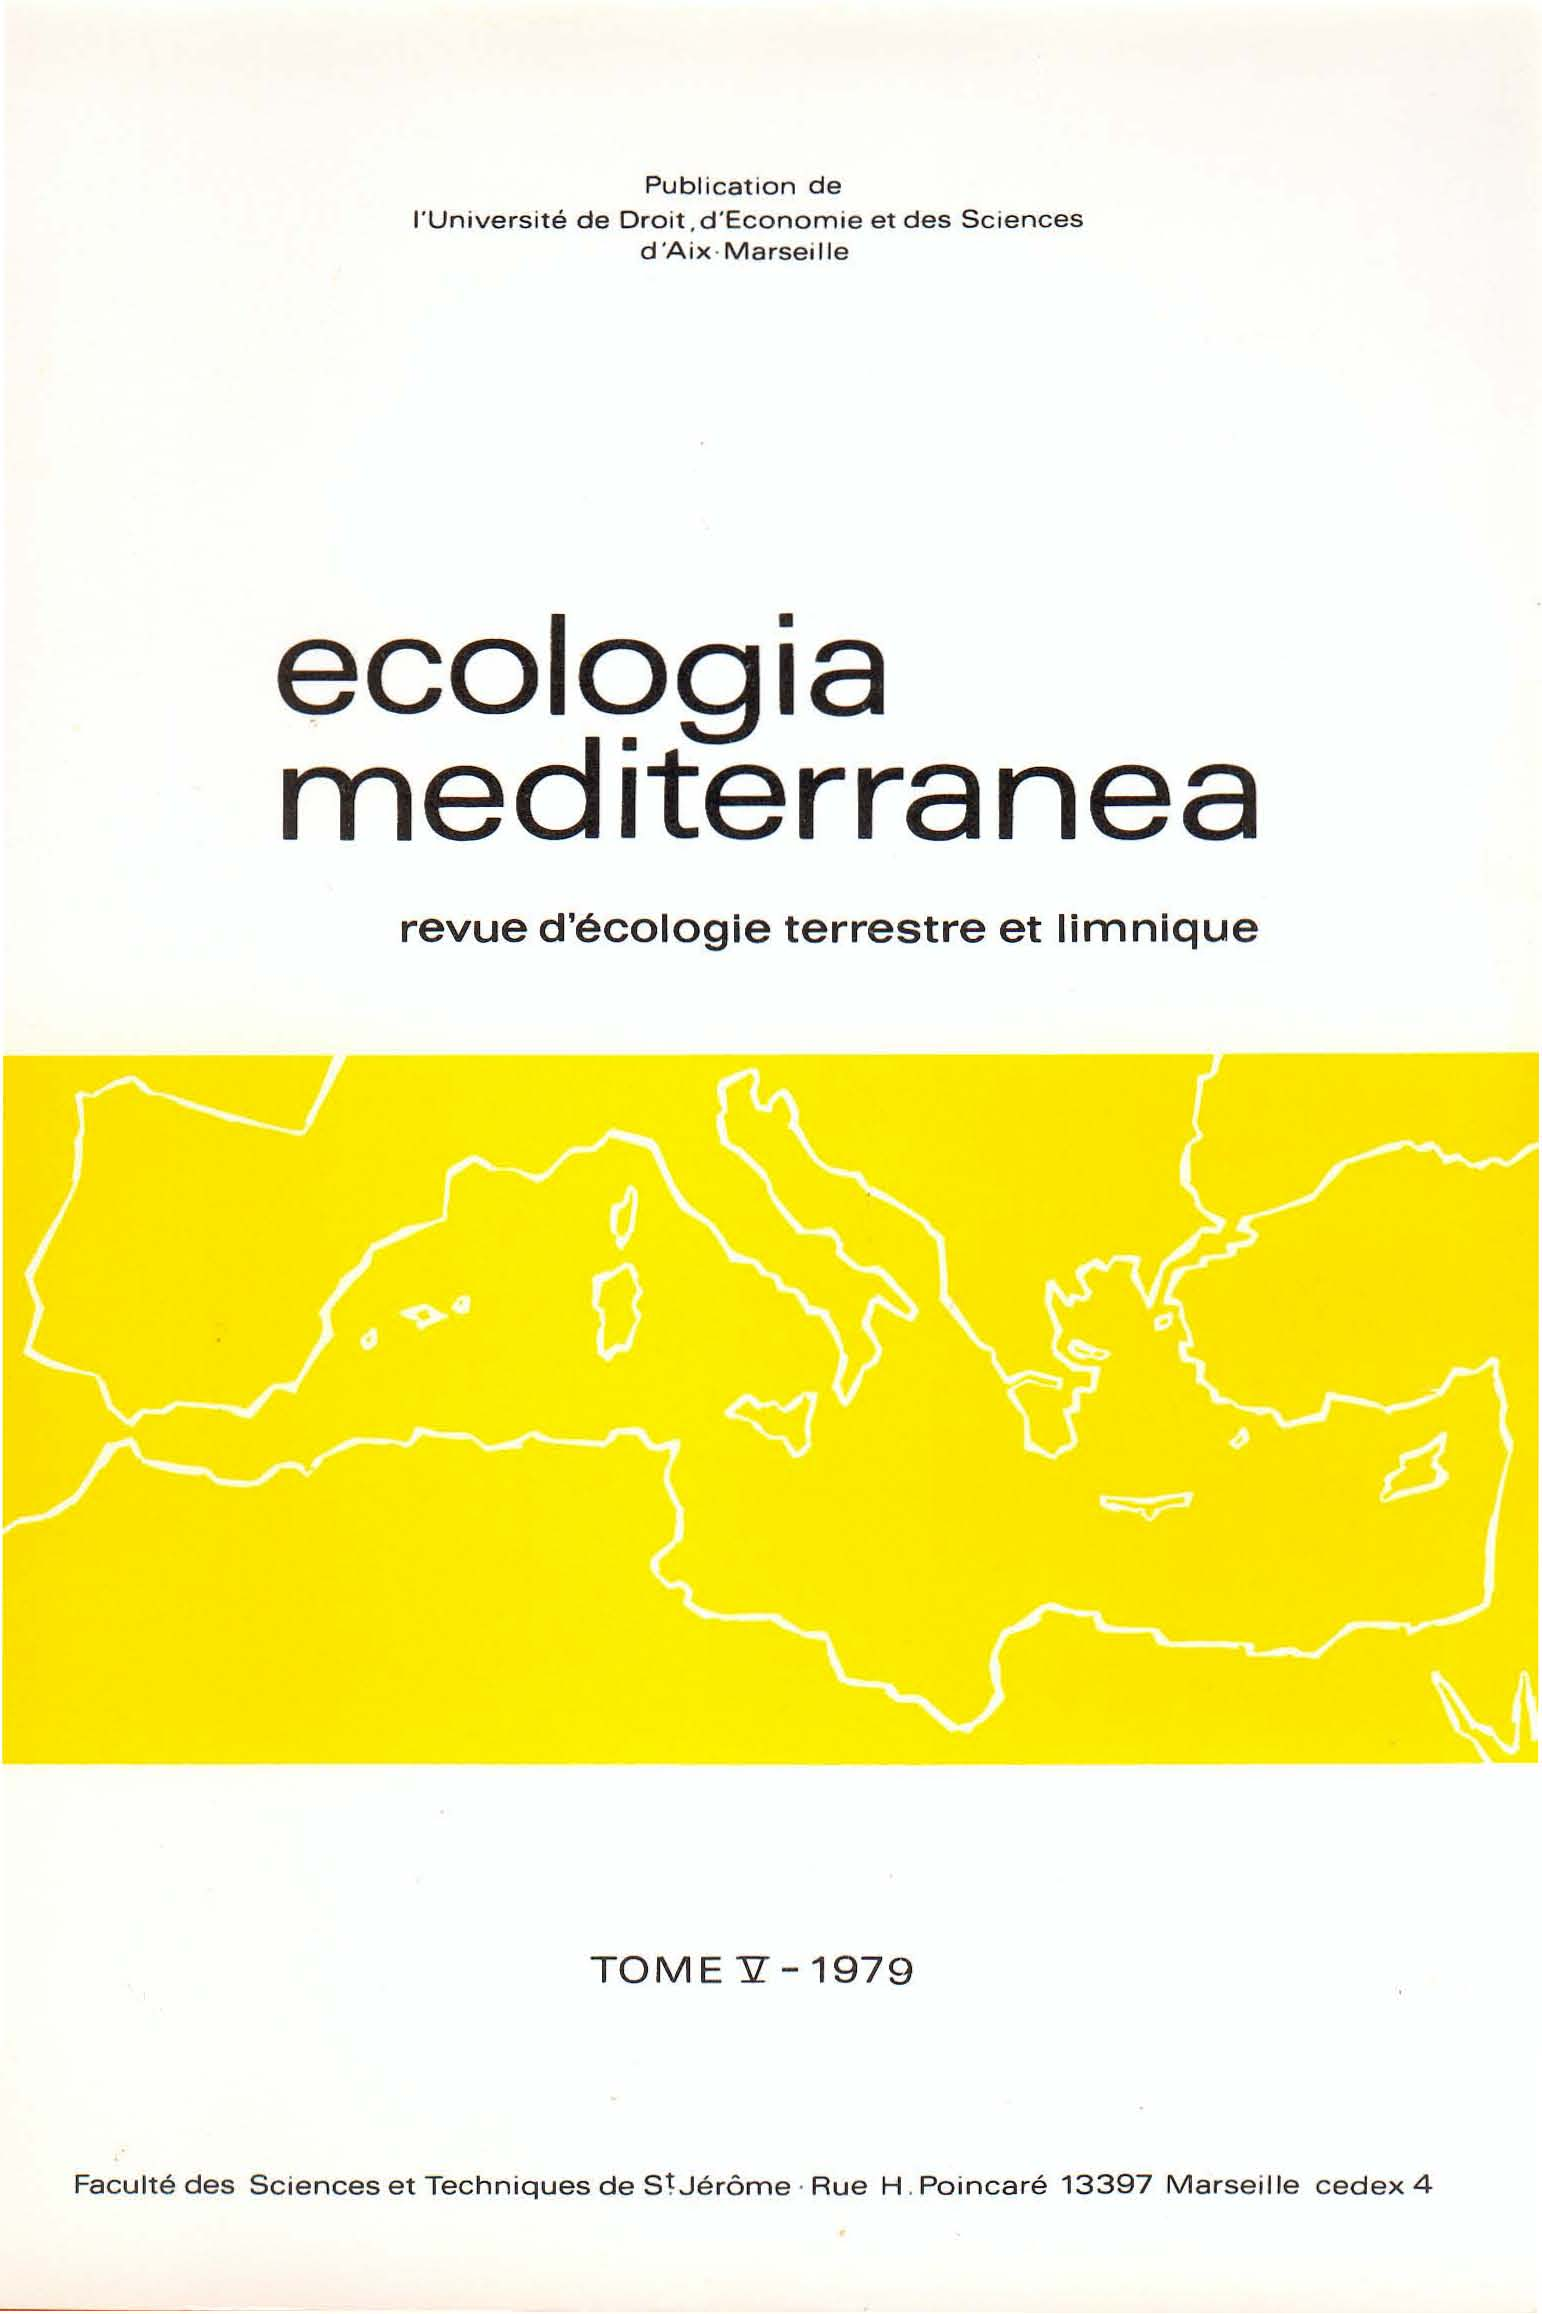 Publication de l'université de Droit, d'economie et des Sciences d'aix-marseille ecologia mediterranea revue